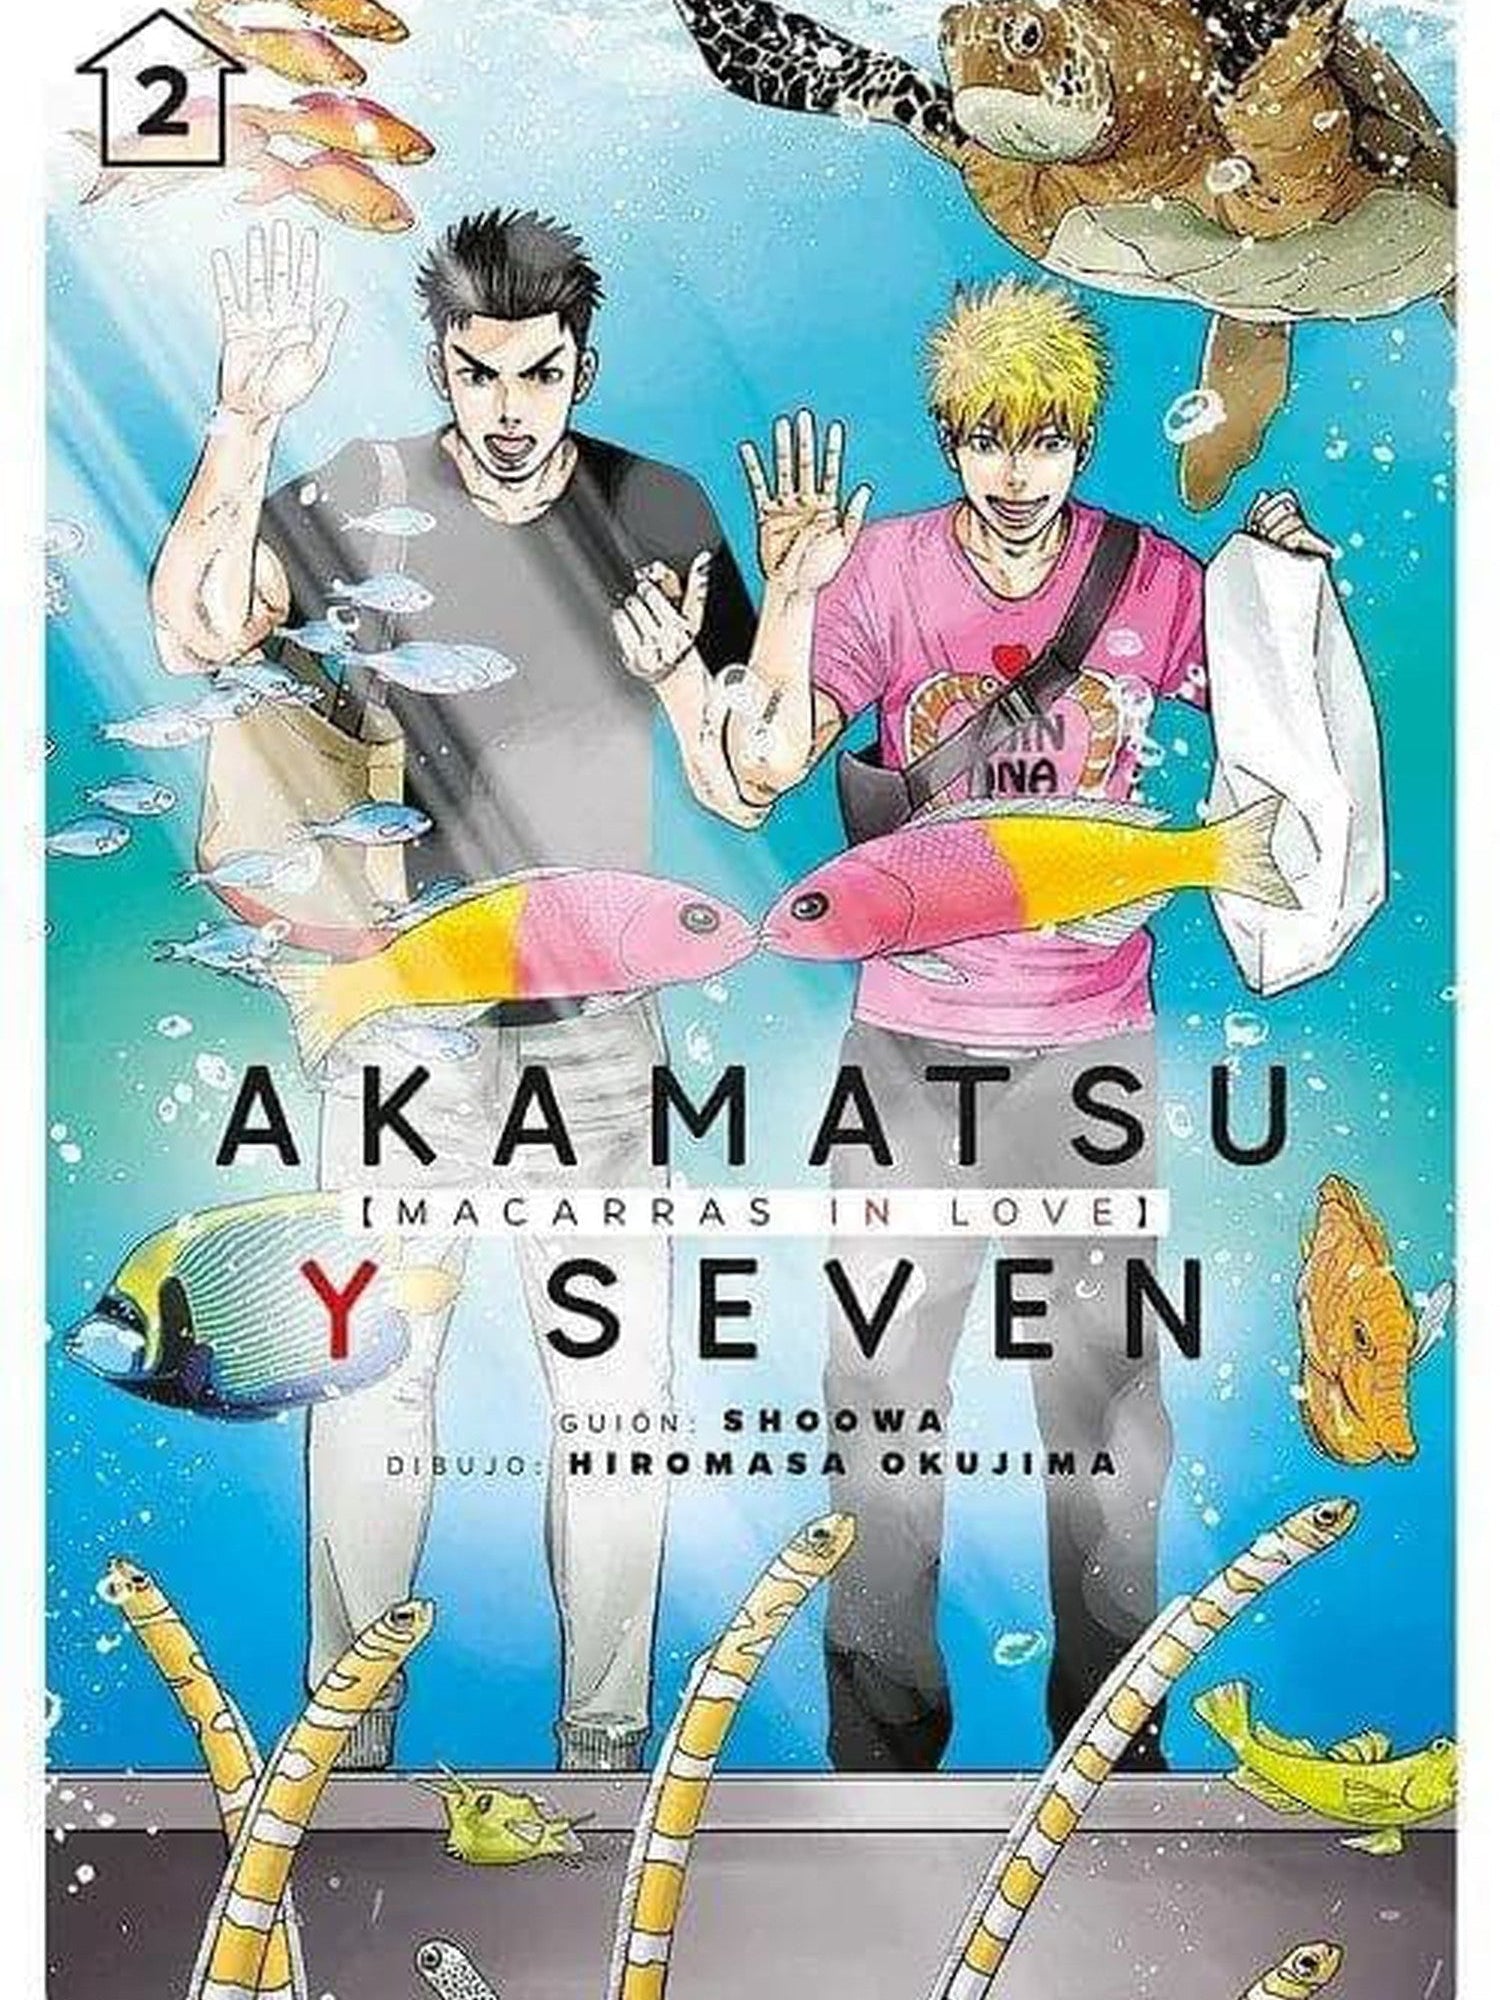 Akamatsu y Seven [Macarras In Love] Vol. 2 Tomodomo ENcuadrocomics